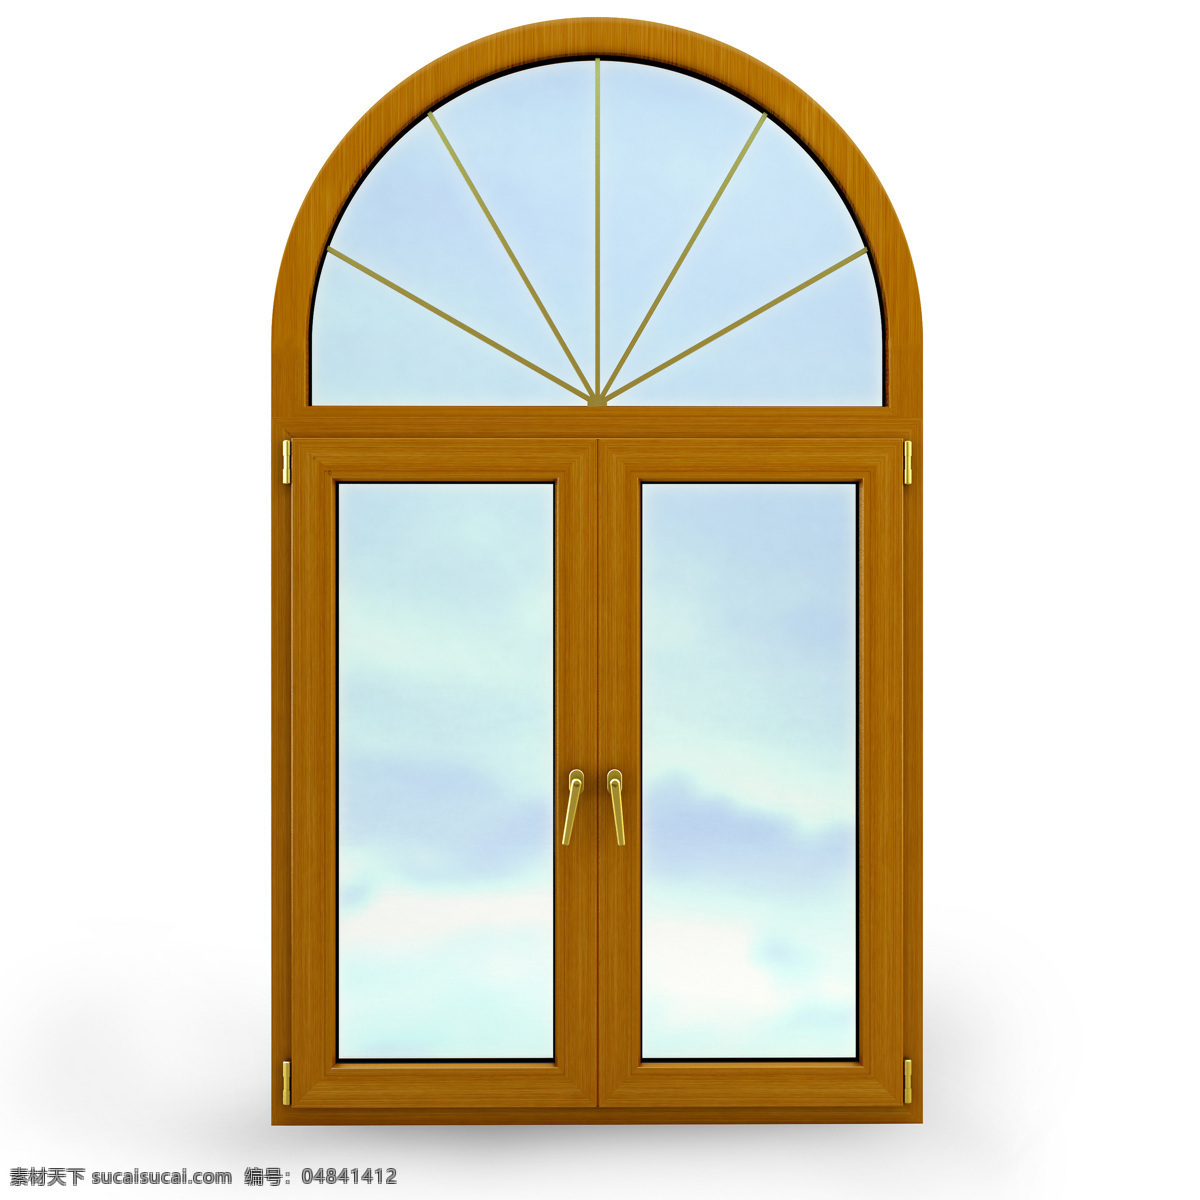 矢量窗户素材 矢量图标 门窗 窗户 窗子 玻璃 其他类别 生活百科 白色